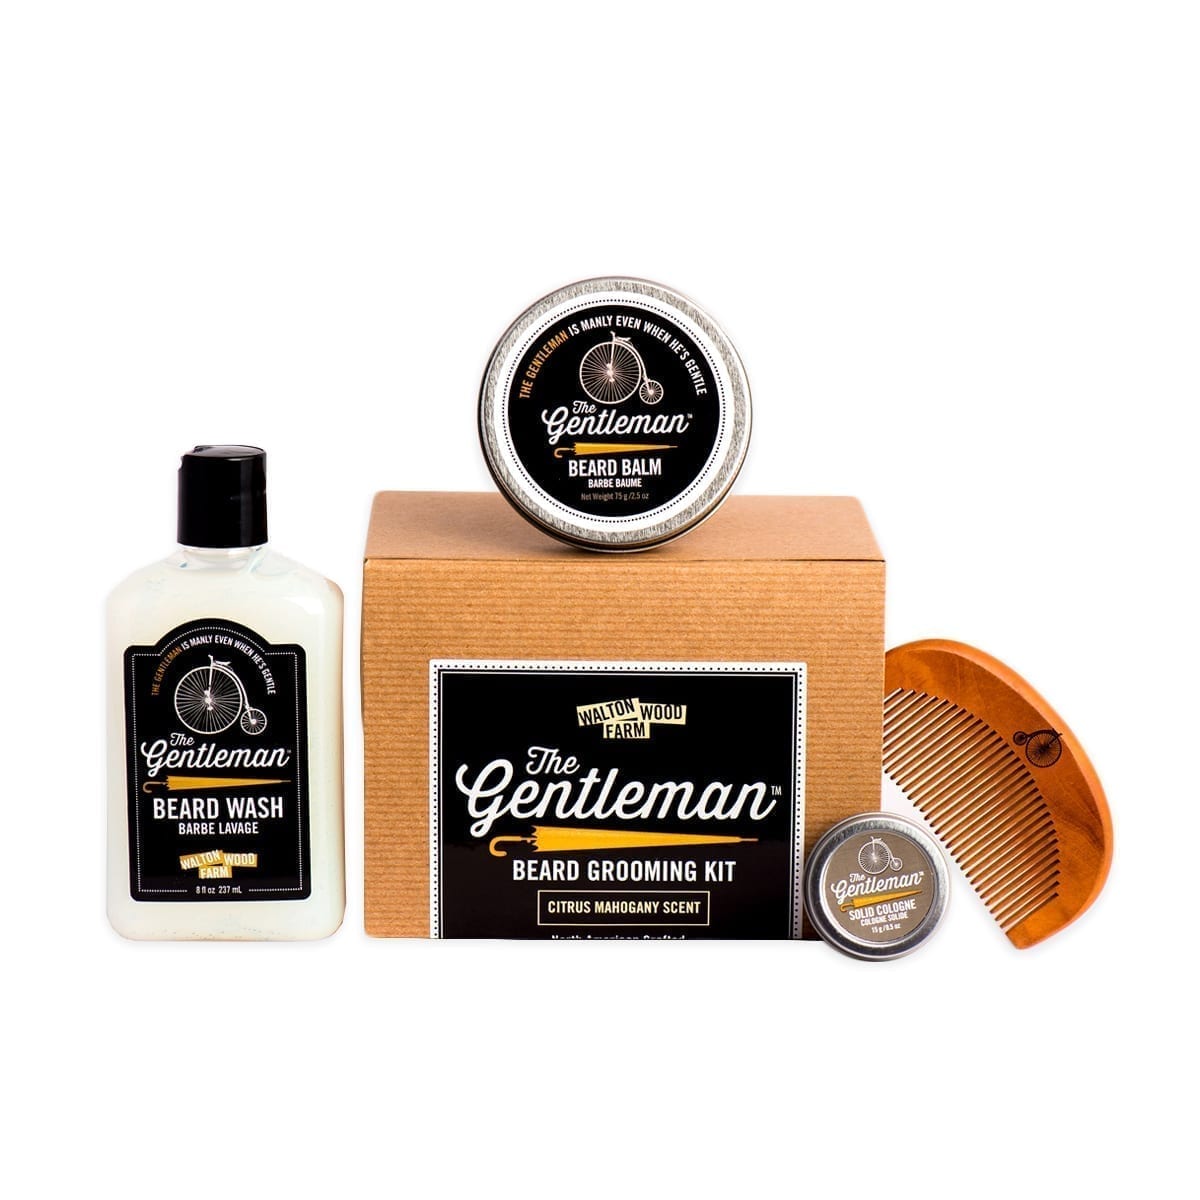 The Gentleman Beard Grooming Kit